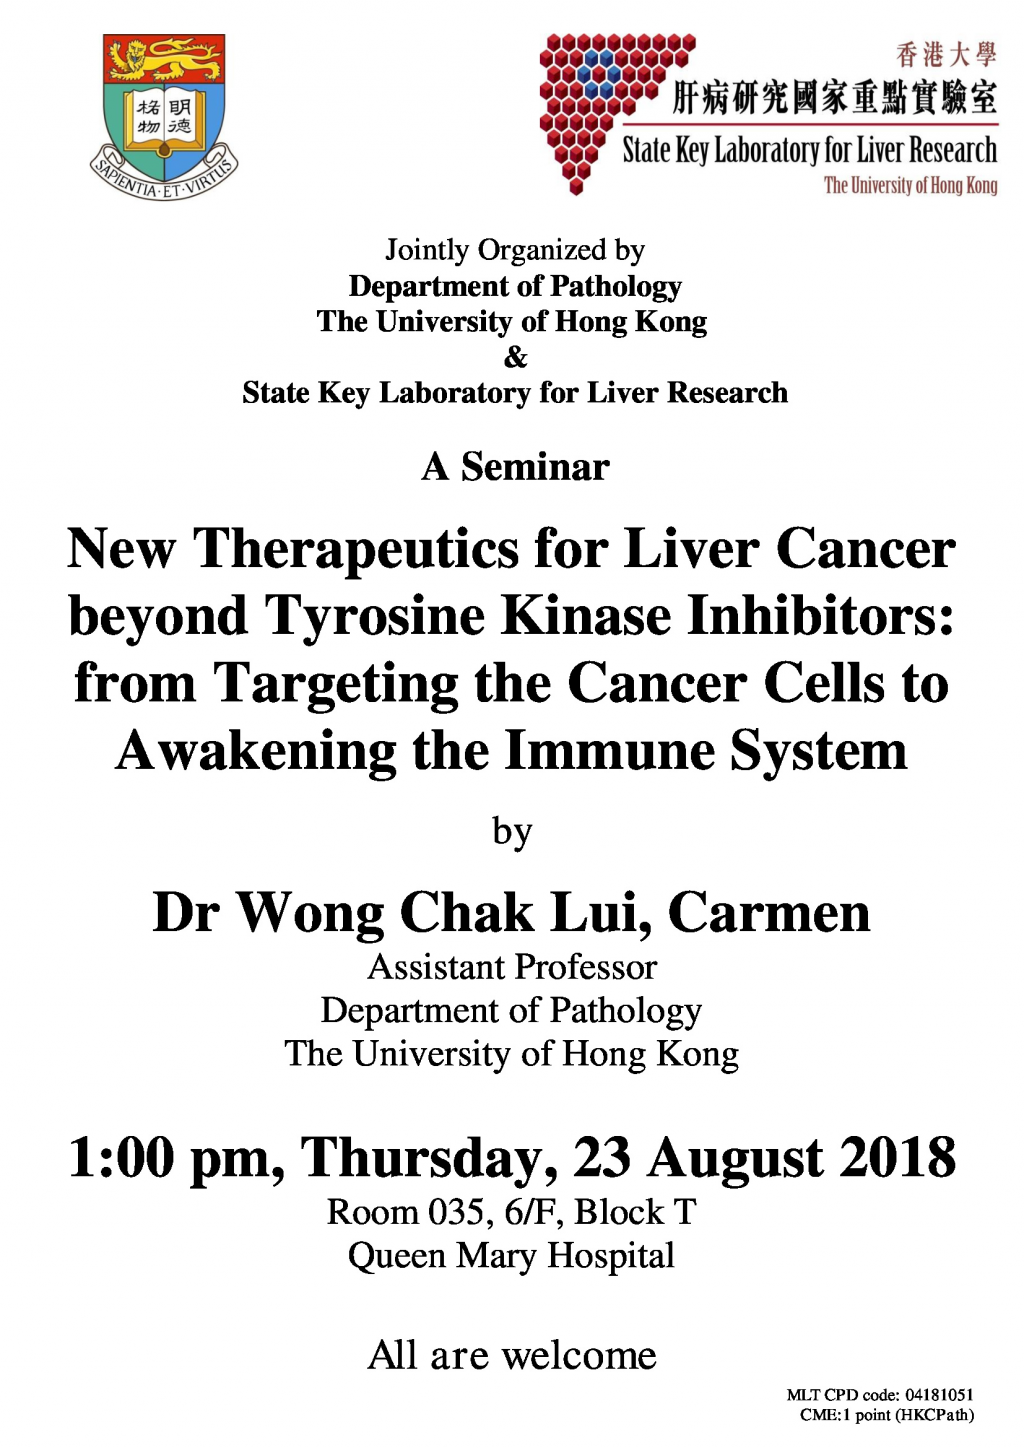 A Seminar by Dr Wong Chak Lui, Carmen on 23 Aug (1 pm)